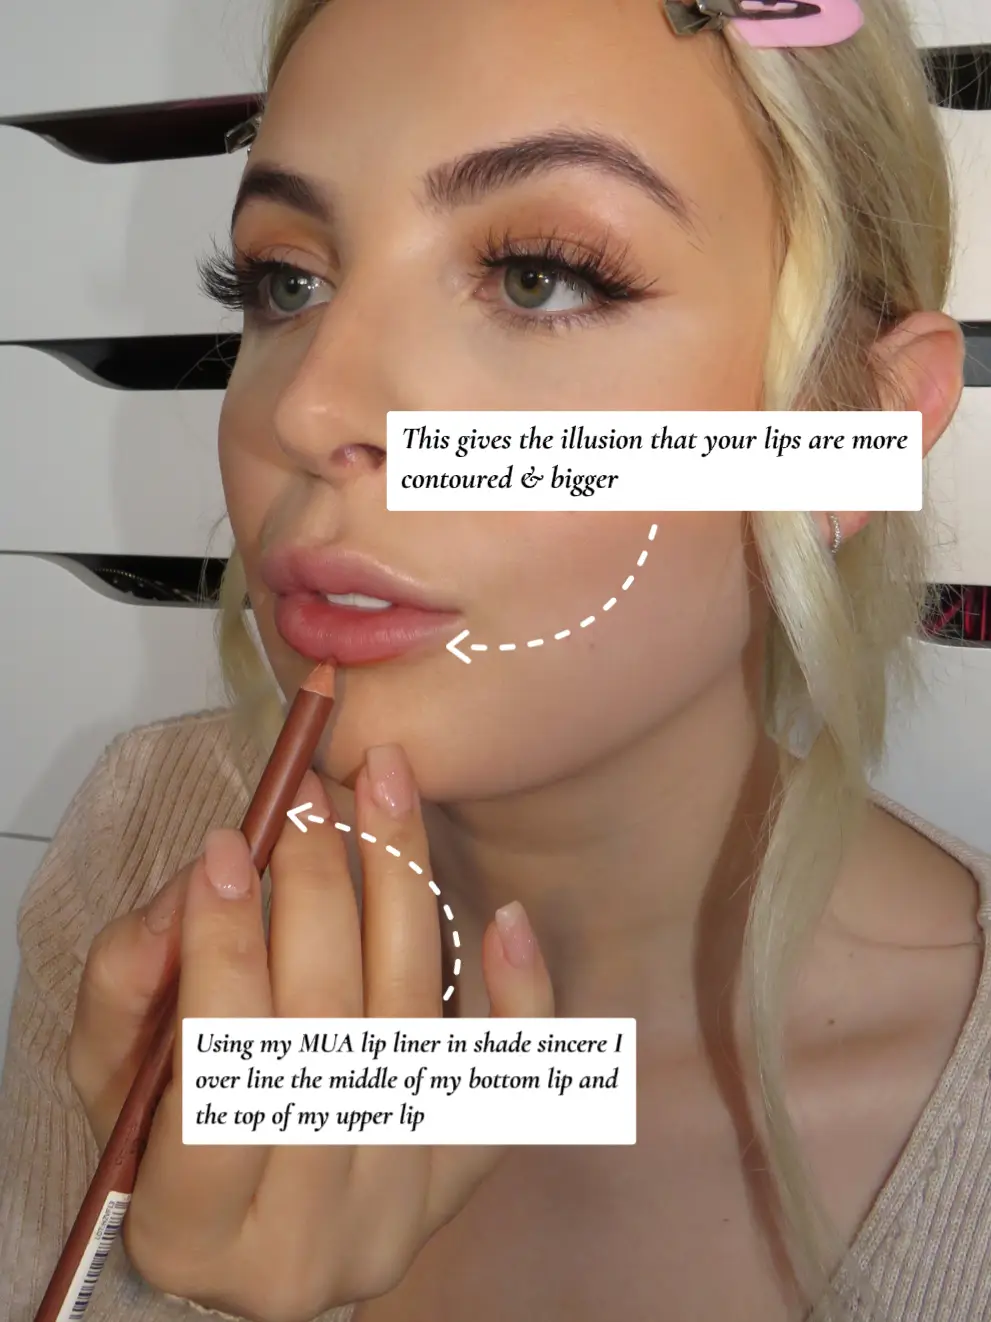 How To: Get Plump Lips 👄 | Gallery posted by Jordan Ellis | Lemon8